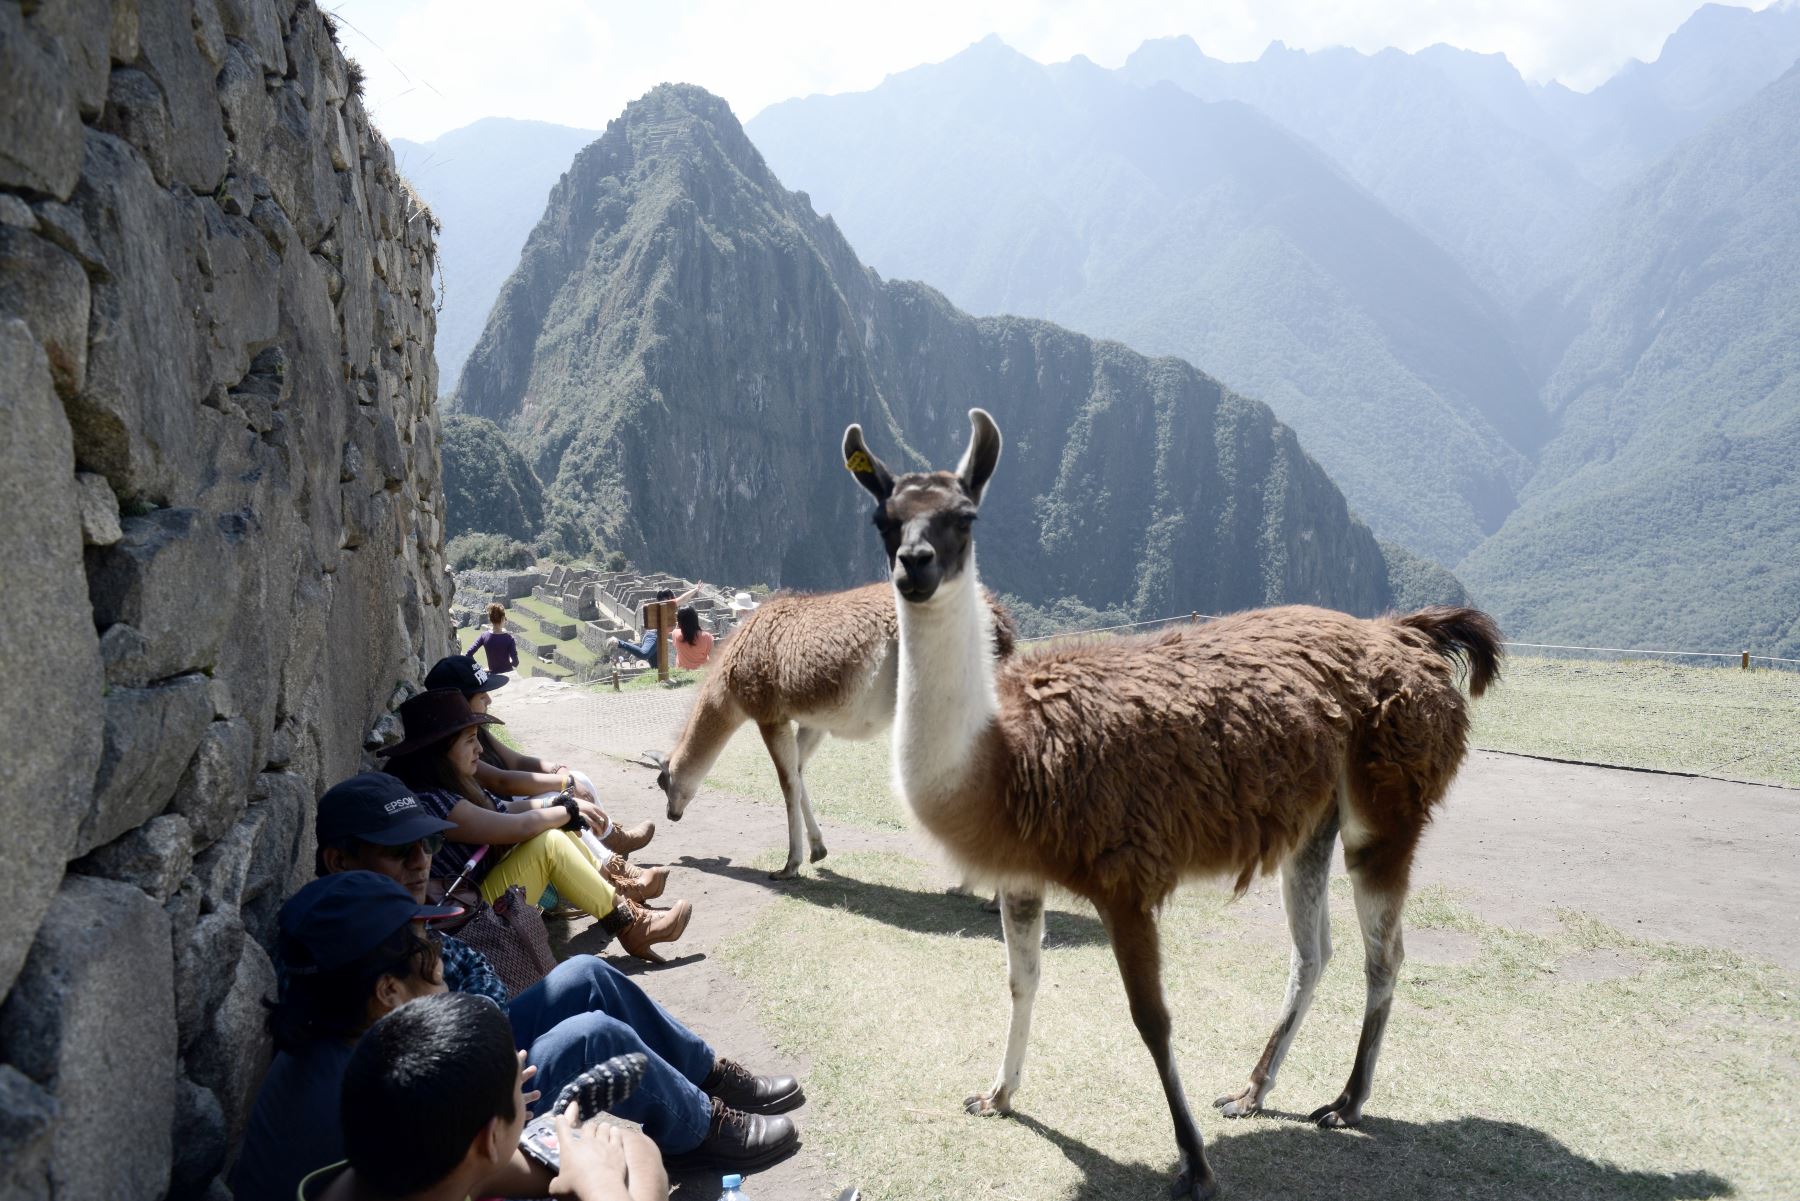 Esta foto tomada el 27 de agosto de 2016 muestra a los visitantes disfrutando de las Llamas en las ruinas de Machu Picchu, que se encuentra a 2.430 metros sobre el nivel del mar.
Incrustado en un paisaje espectacular en el punto de encuentro entre los Andes peruanos y la cuenca del Amazonas, el Santuario Histórico de Machu Picchu es uno de los mayores logros artísticos, arquitectónicos y de uso de la tierra en cualquier lugar y el legado tangible más significativo de la civilización Inca. / AFP